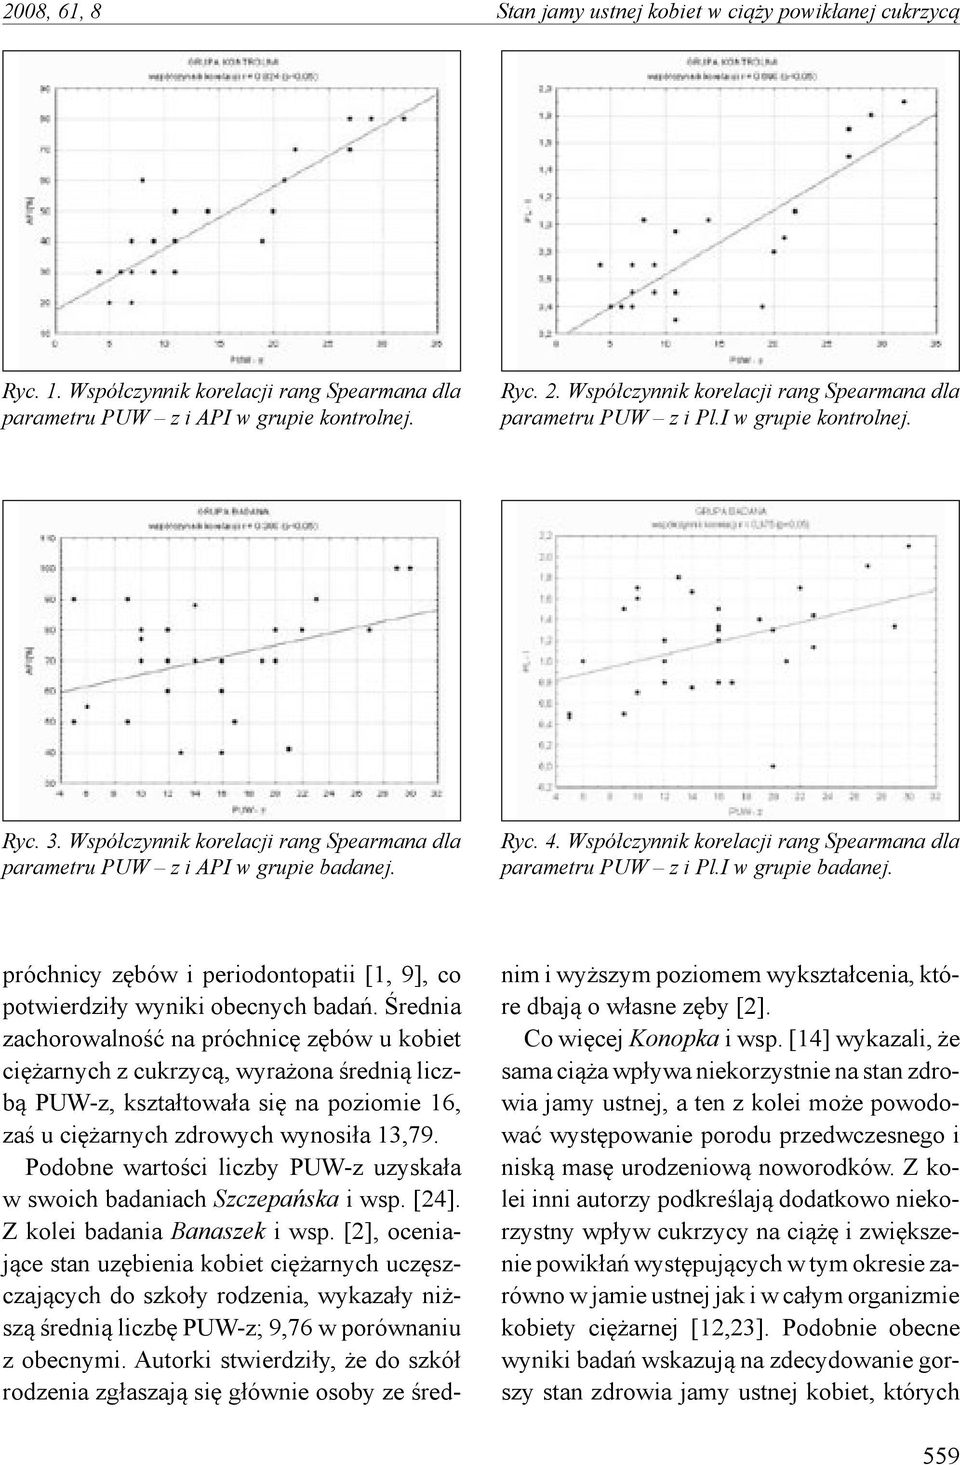 Współczynnik korelacji rang Spearmana dla parametru PUW z i Pl.I w grupie badanej. próchnicy zębów i periodontopatii [1, 9], co potwierdziły wyniki obecnych badań.